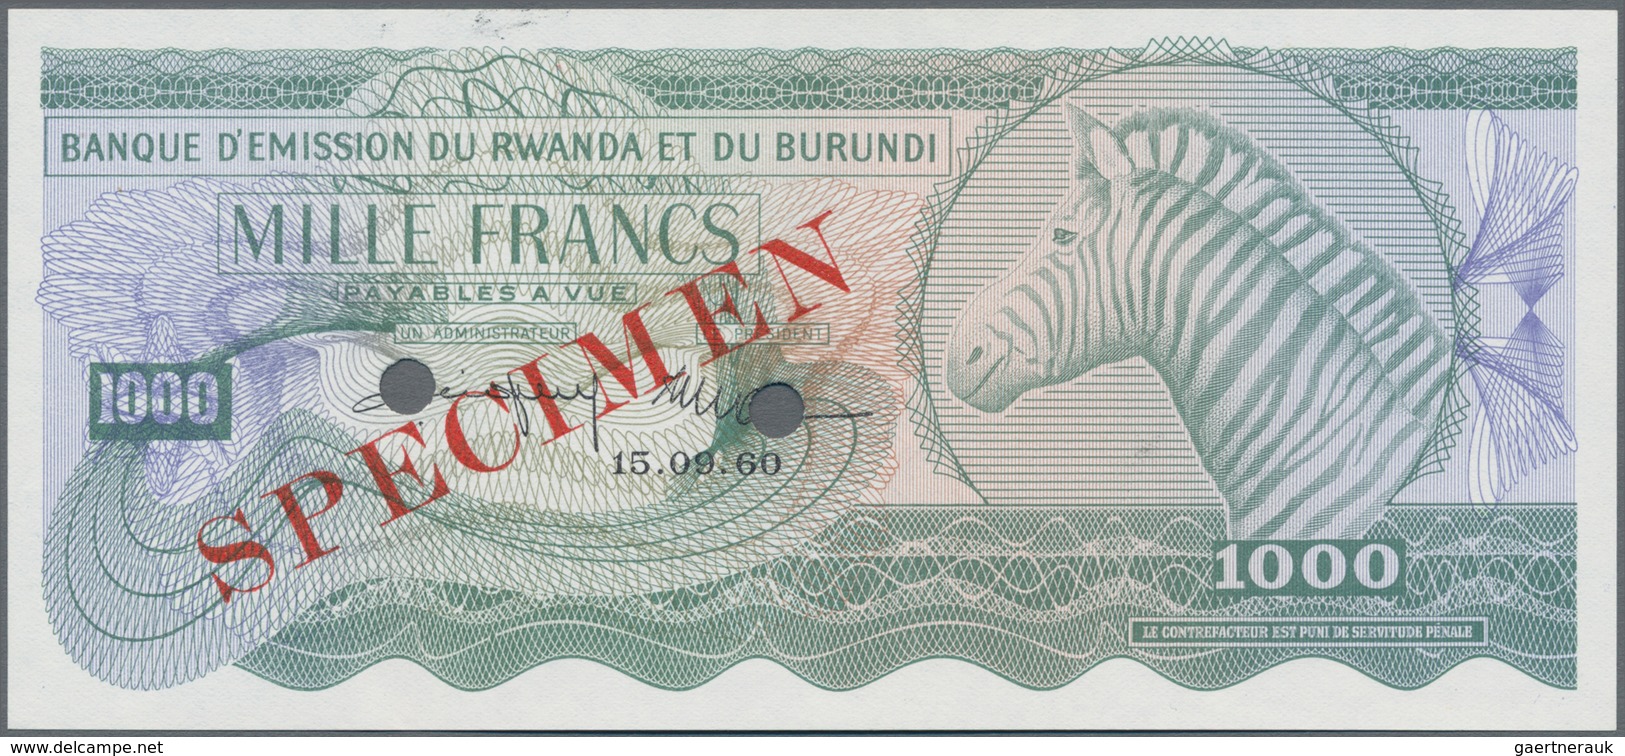 Rwanda-Burundi / Ruanda-Burundi: Banque D'Émission Du Rwanda Et Du Burundi 1000 Francs September 15t - Ruanda-Urundi